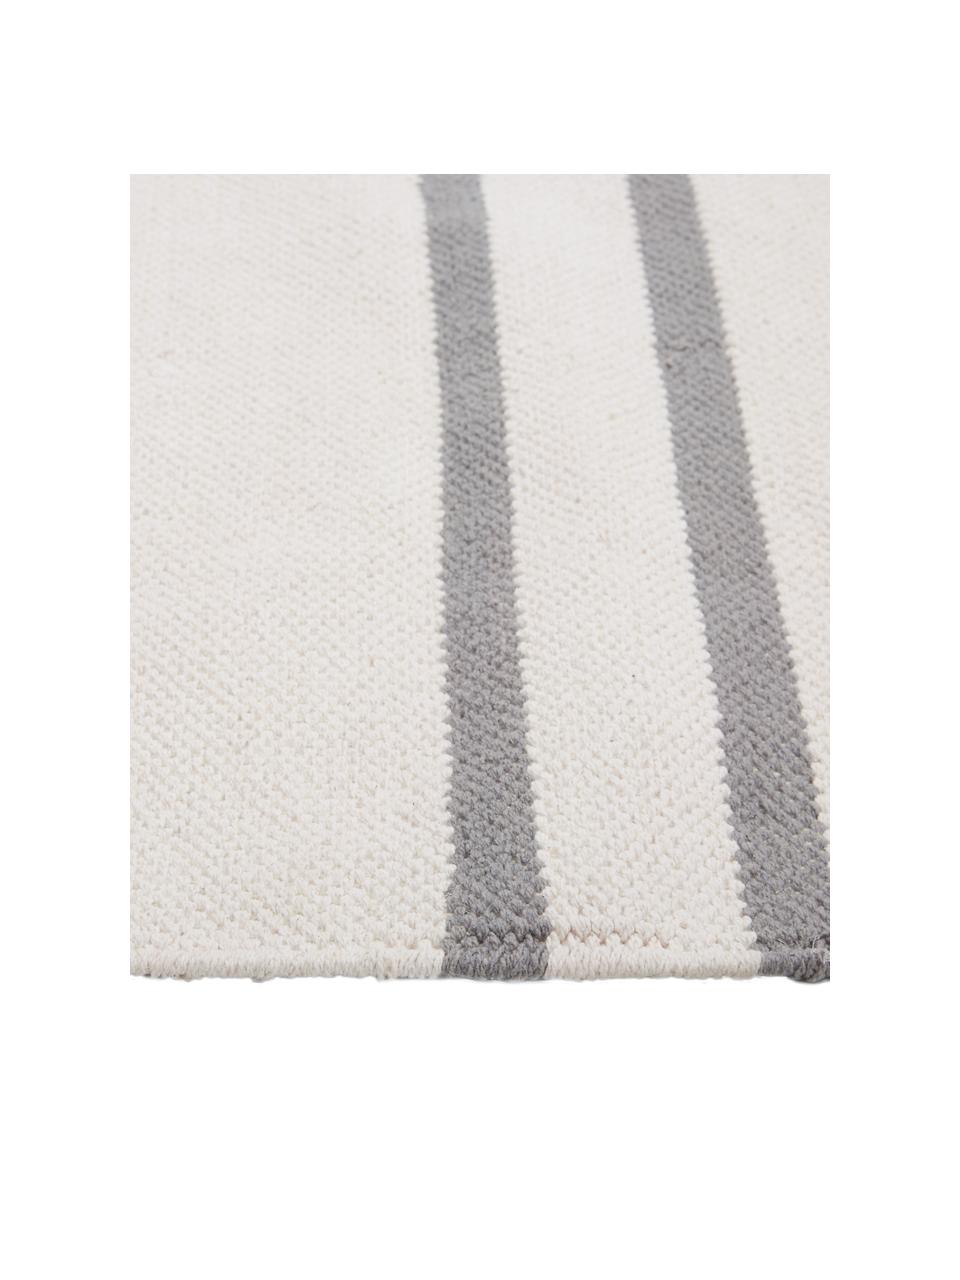 Flachgewebter Baumwollteppich Georgio mit grafischem Muster, 100% Baumwolle, Grau, Beige, Rosa, B 120 x L 180 cm (Größe S)